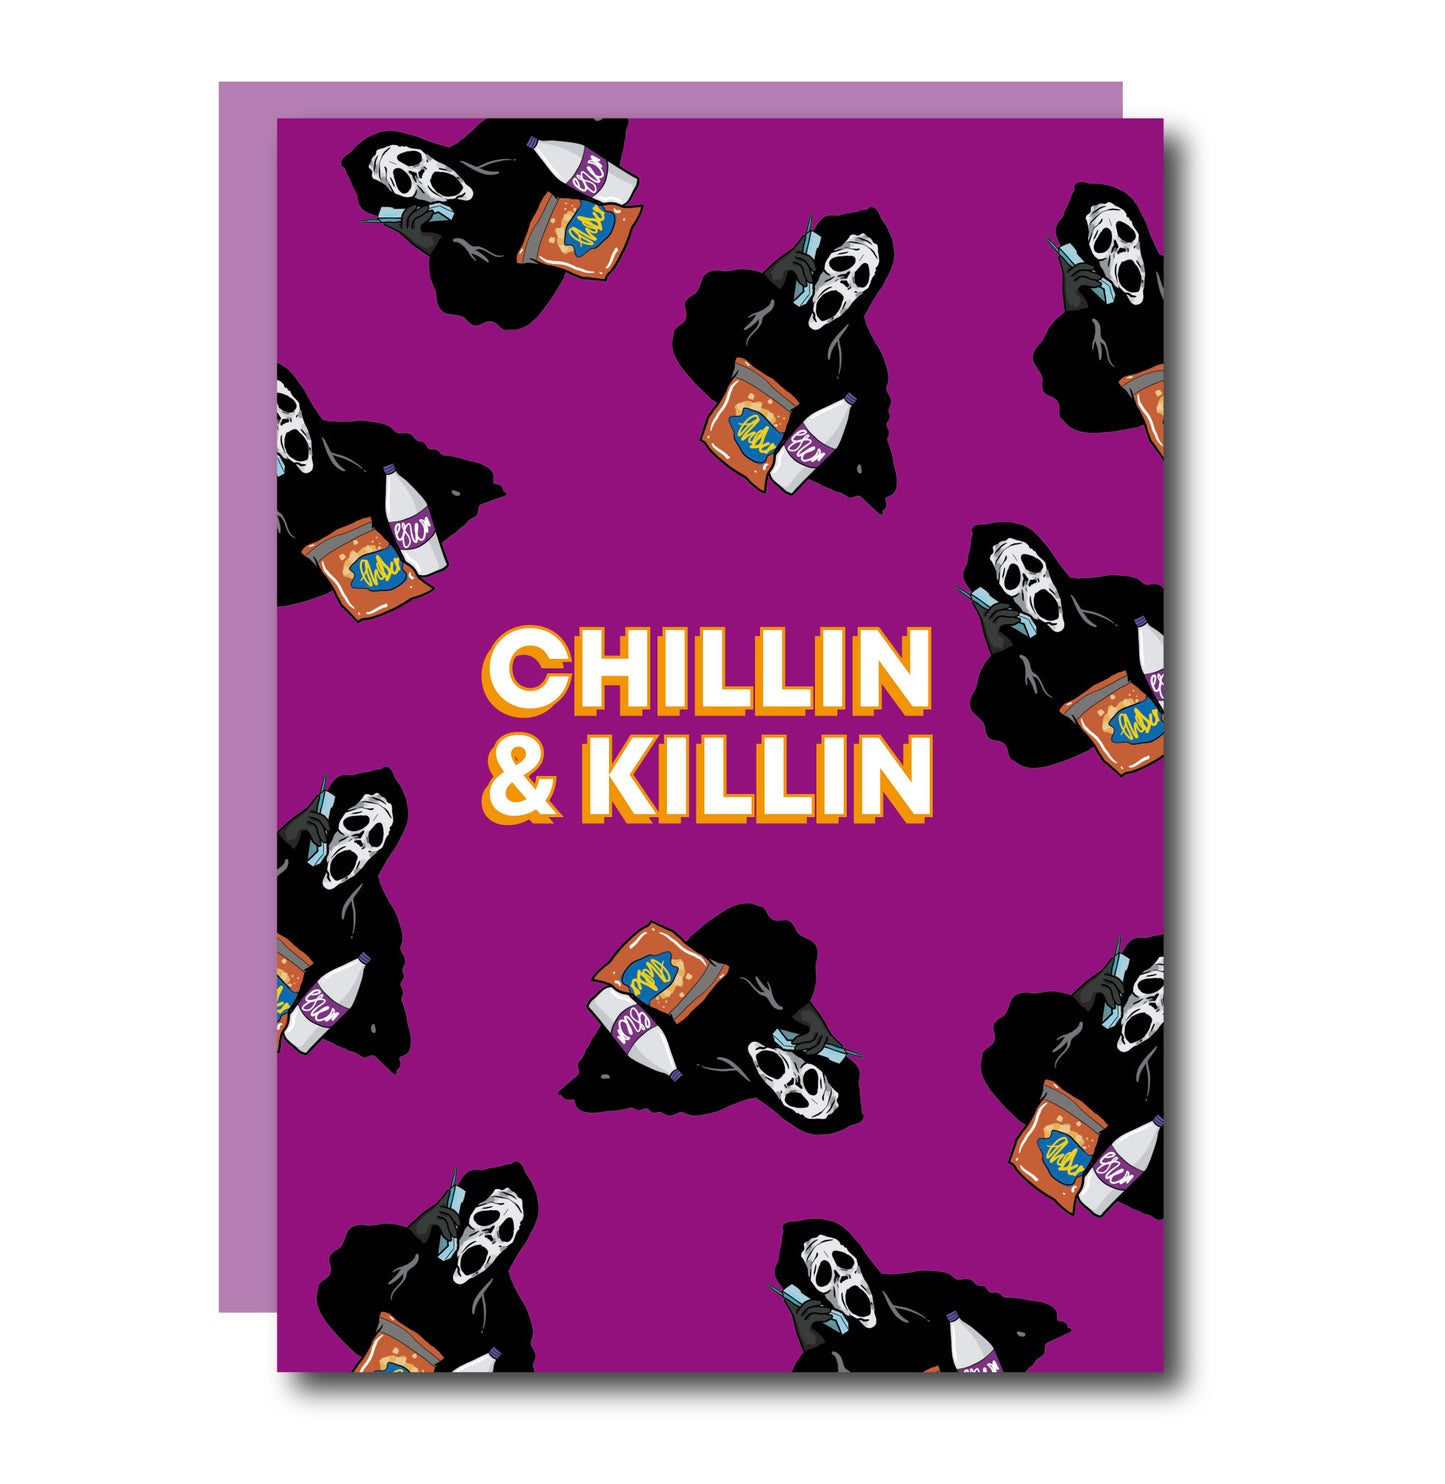 CHILLIN & KILLIN